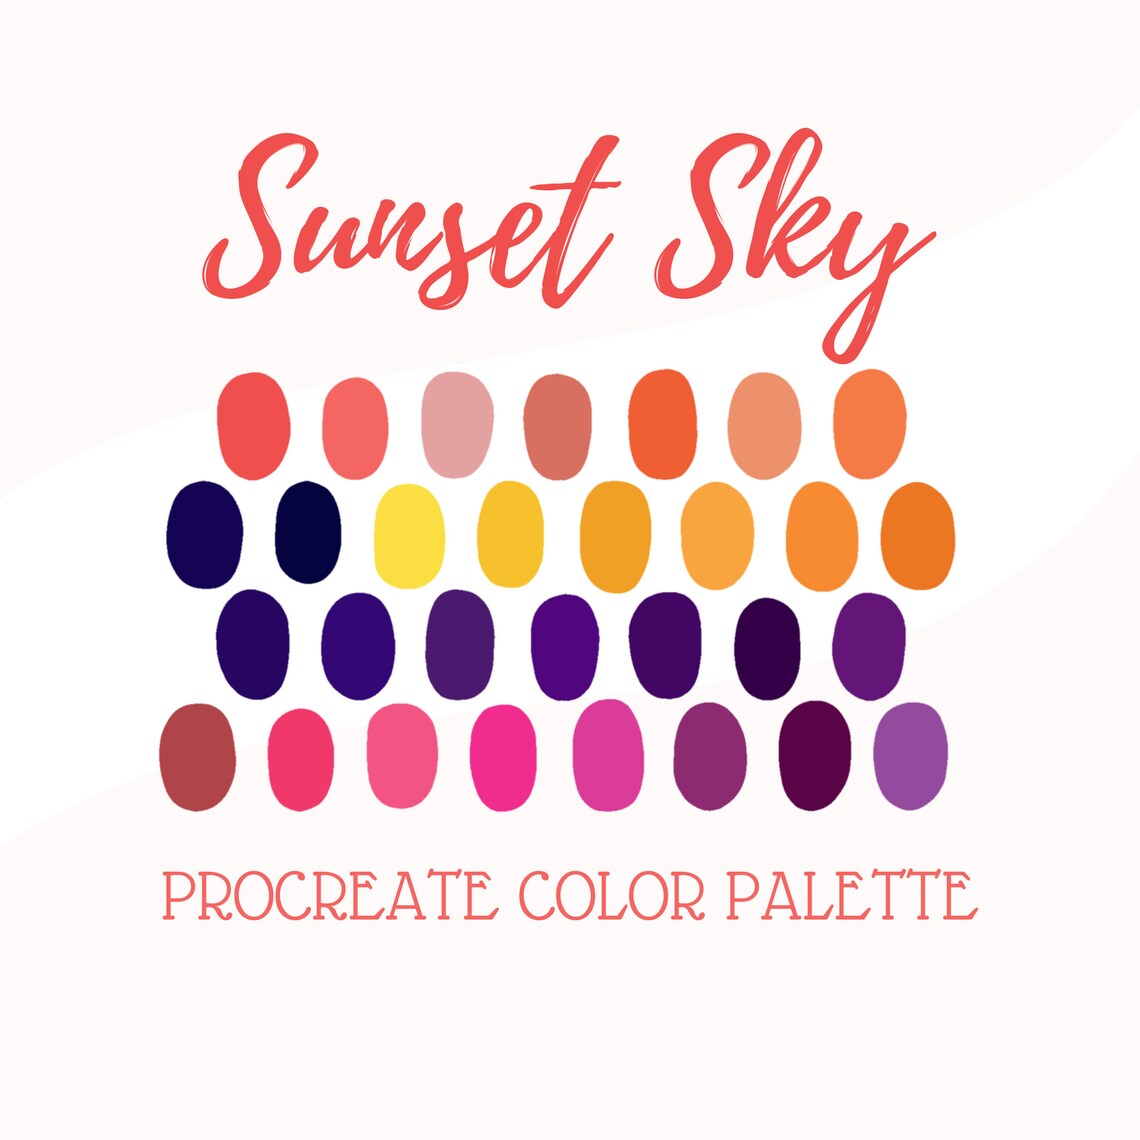 Procreate Color Palette Sunset Sky - Etsy